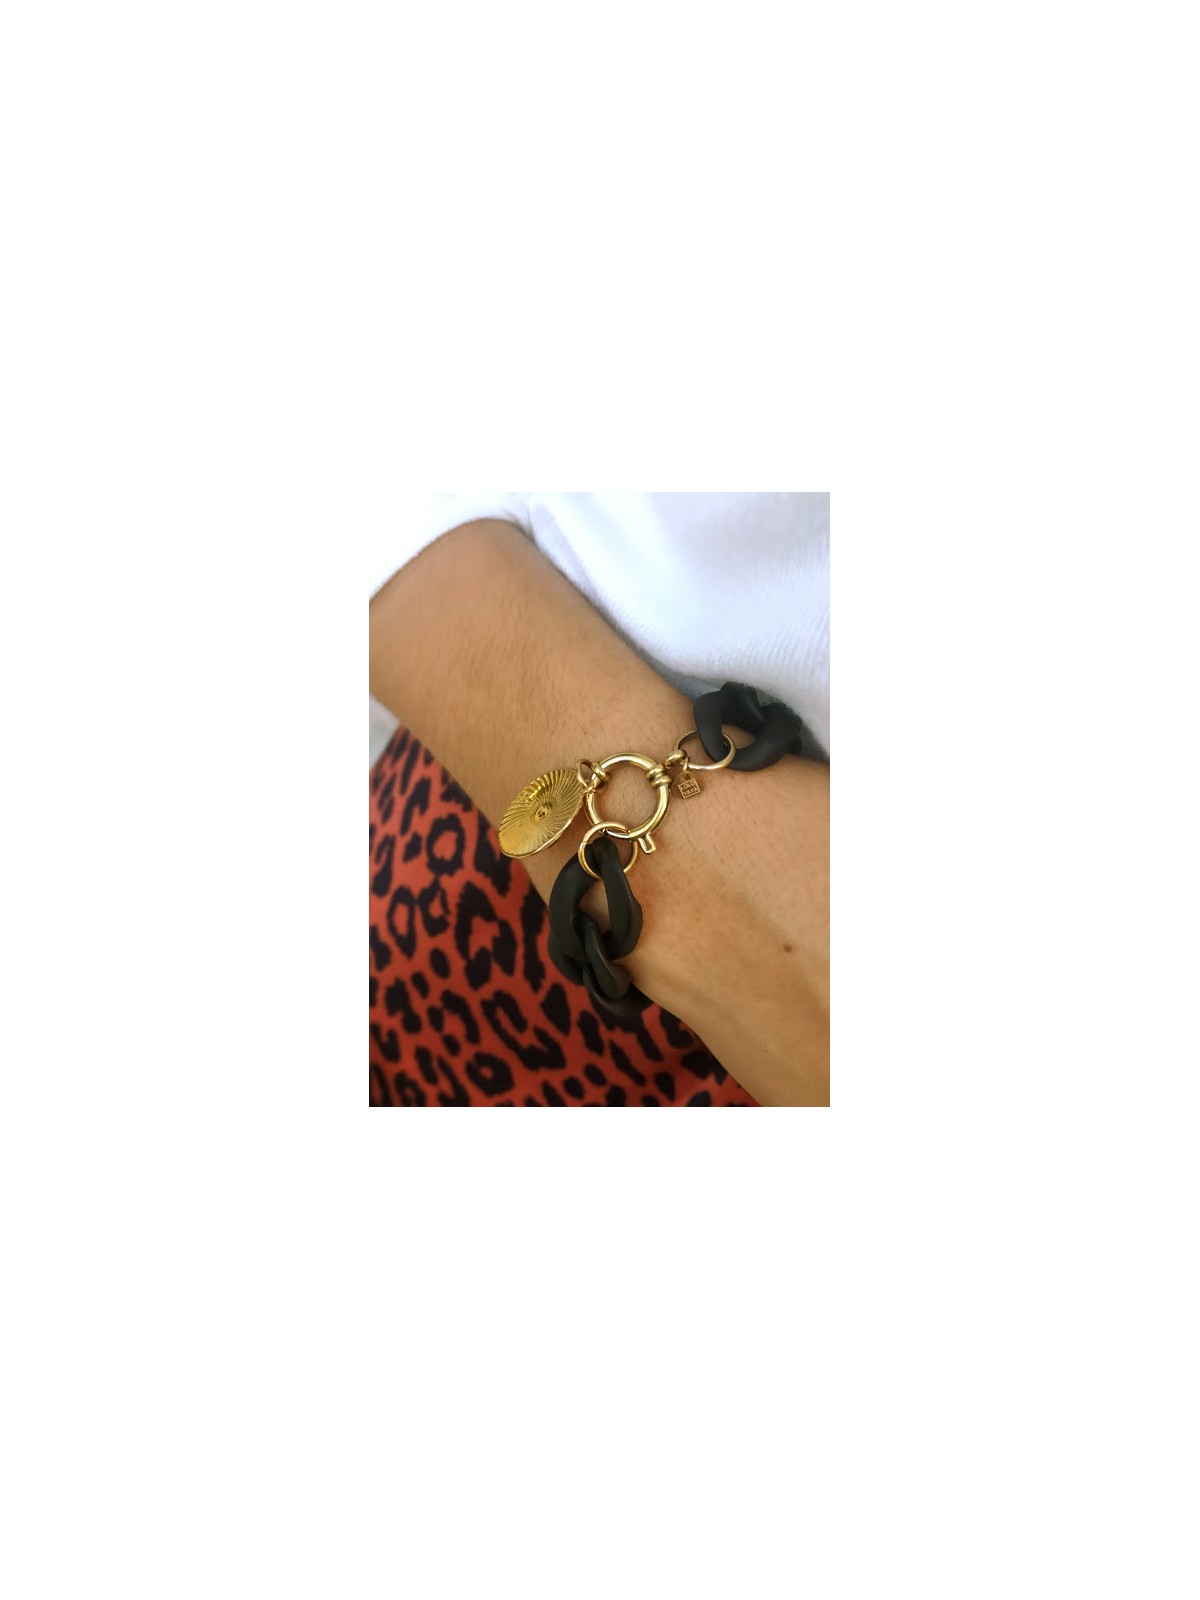 Bracelet fantaisie noir et or avec crochet et médaillon | 1 vue porté|Tilleulmenthe boutique de mode femme en ligne